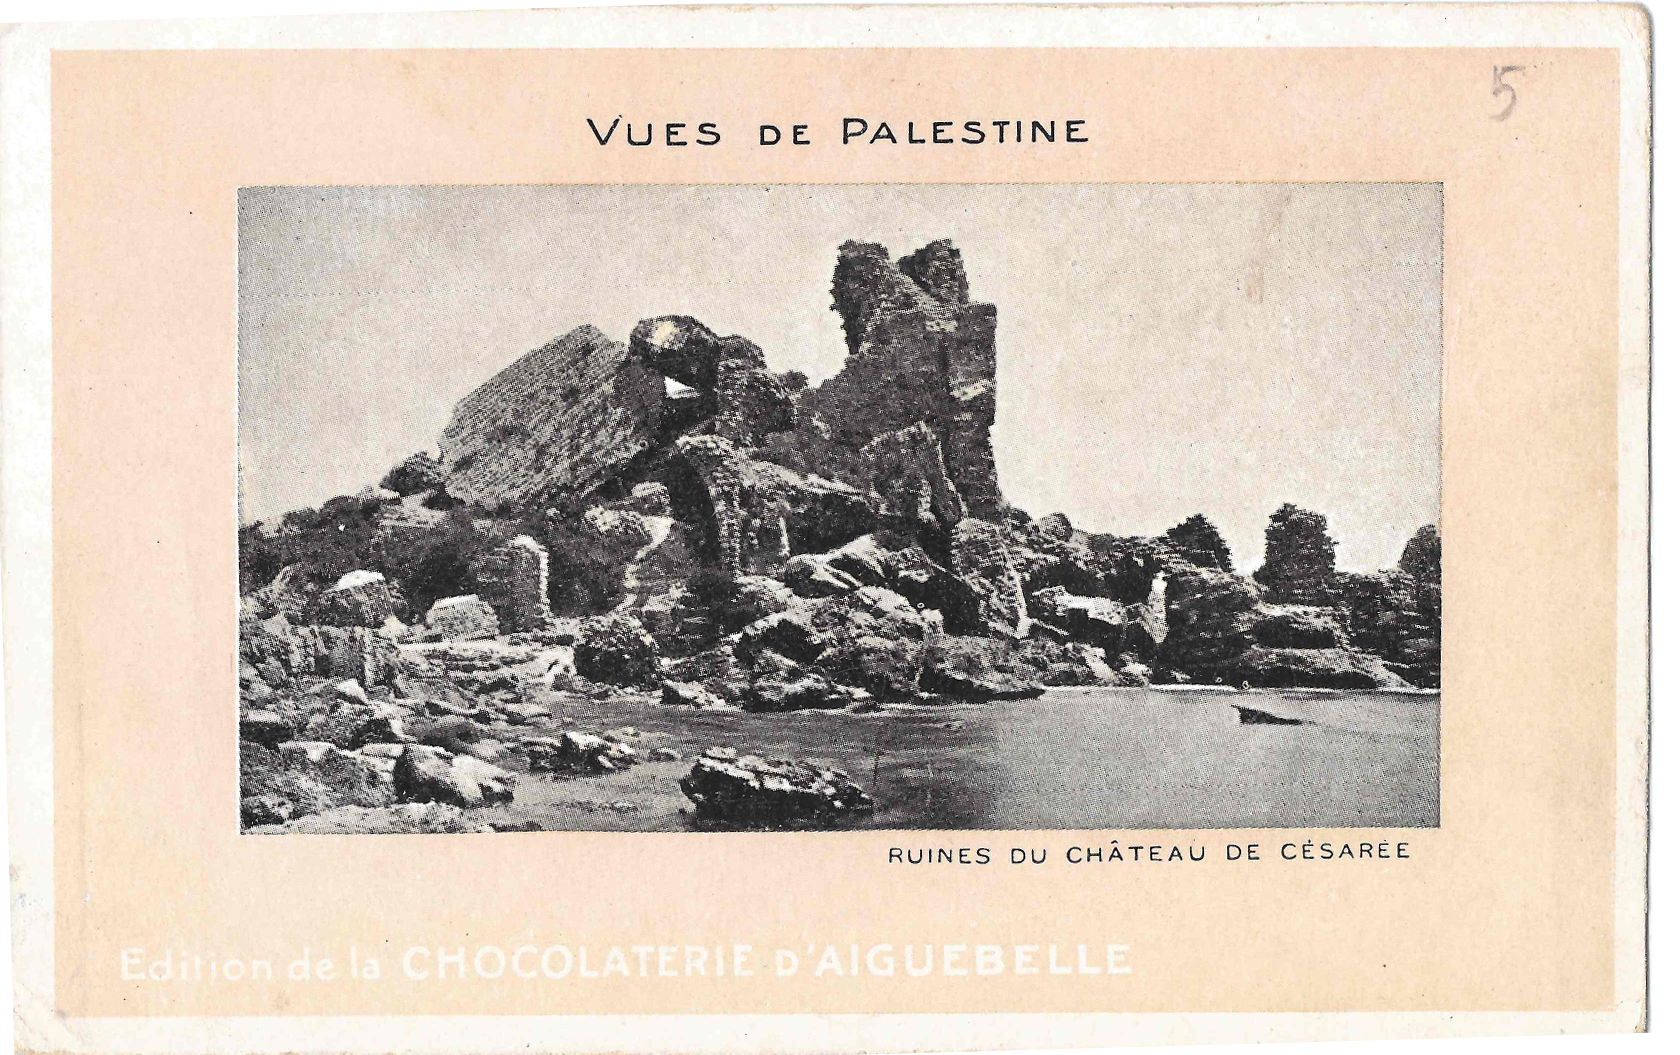  قلعة قيصرية في فلسطين 1913.jpg